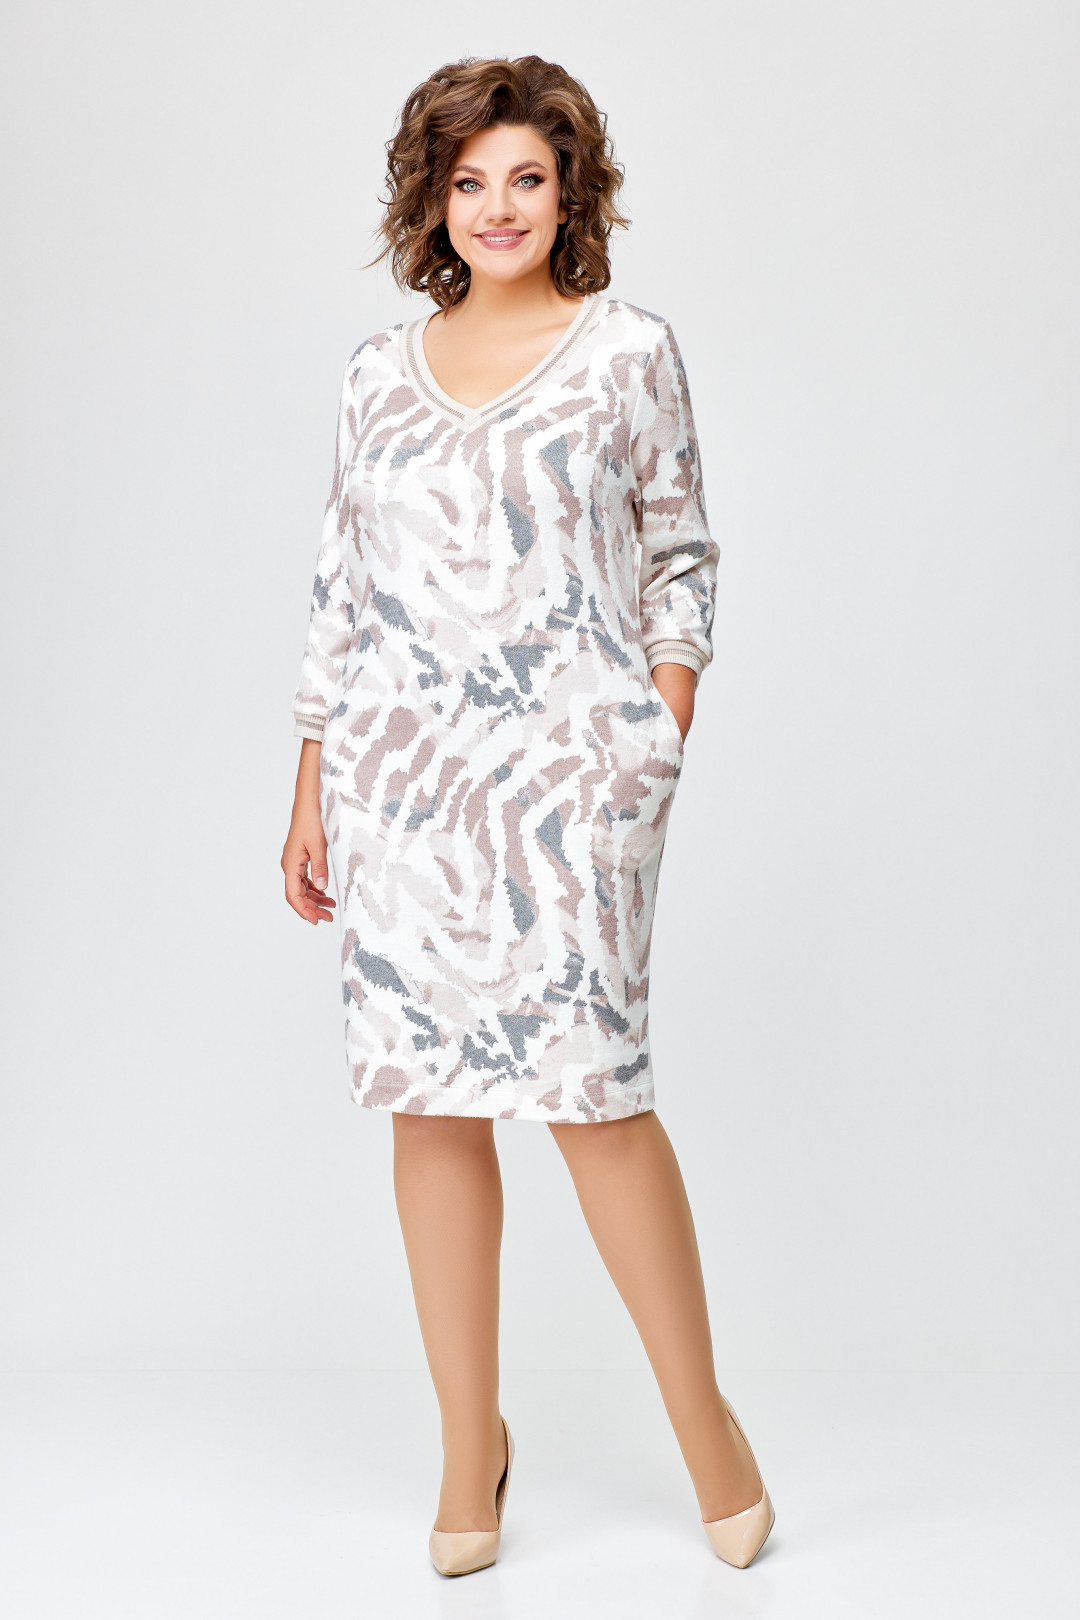 Платье Swallow 686.1 молочный в принт бежево-серый дизайн